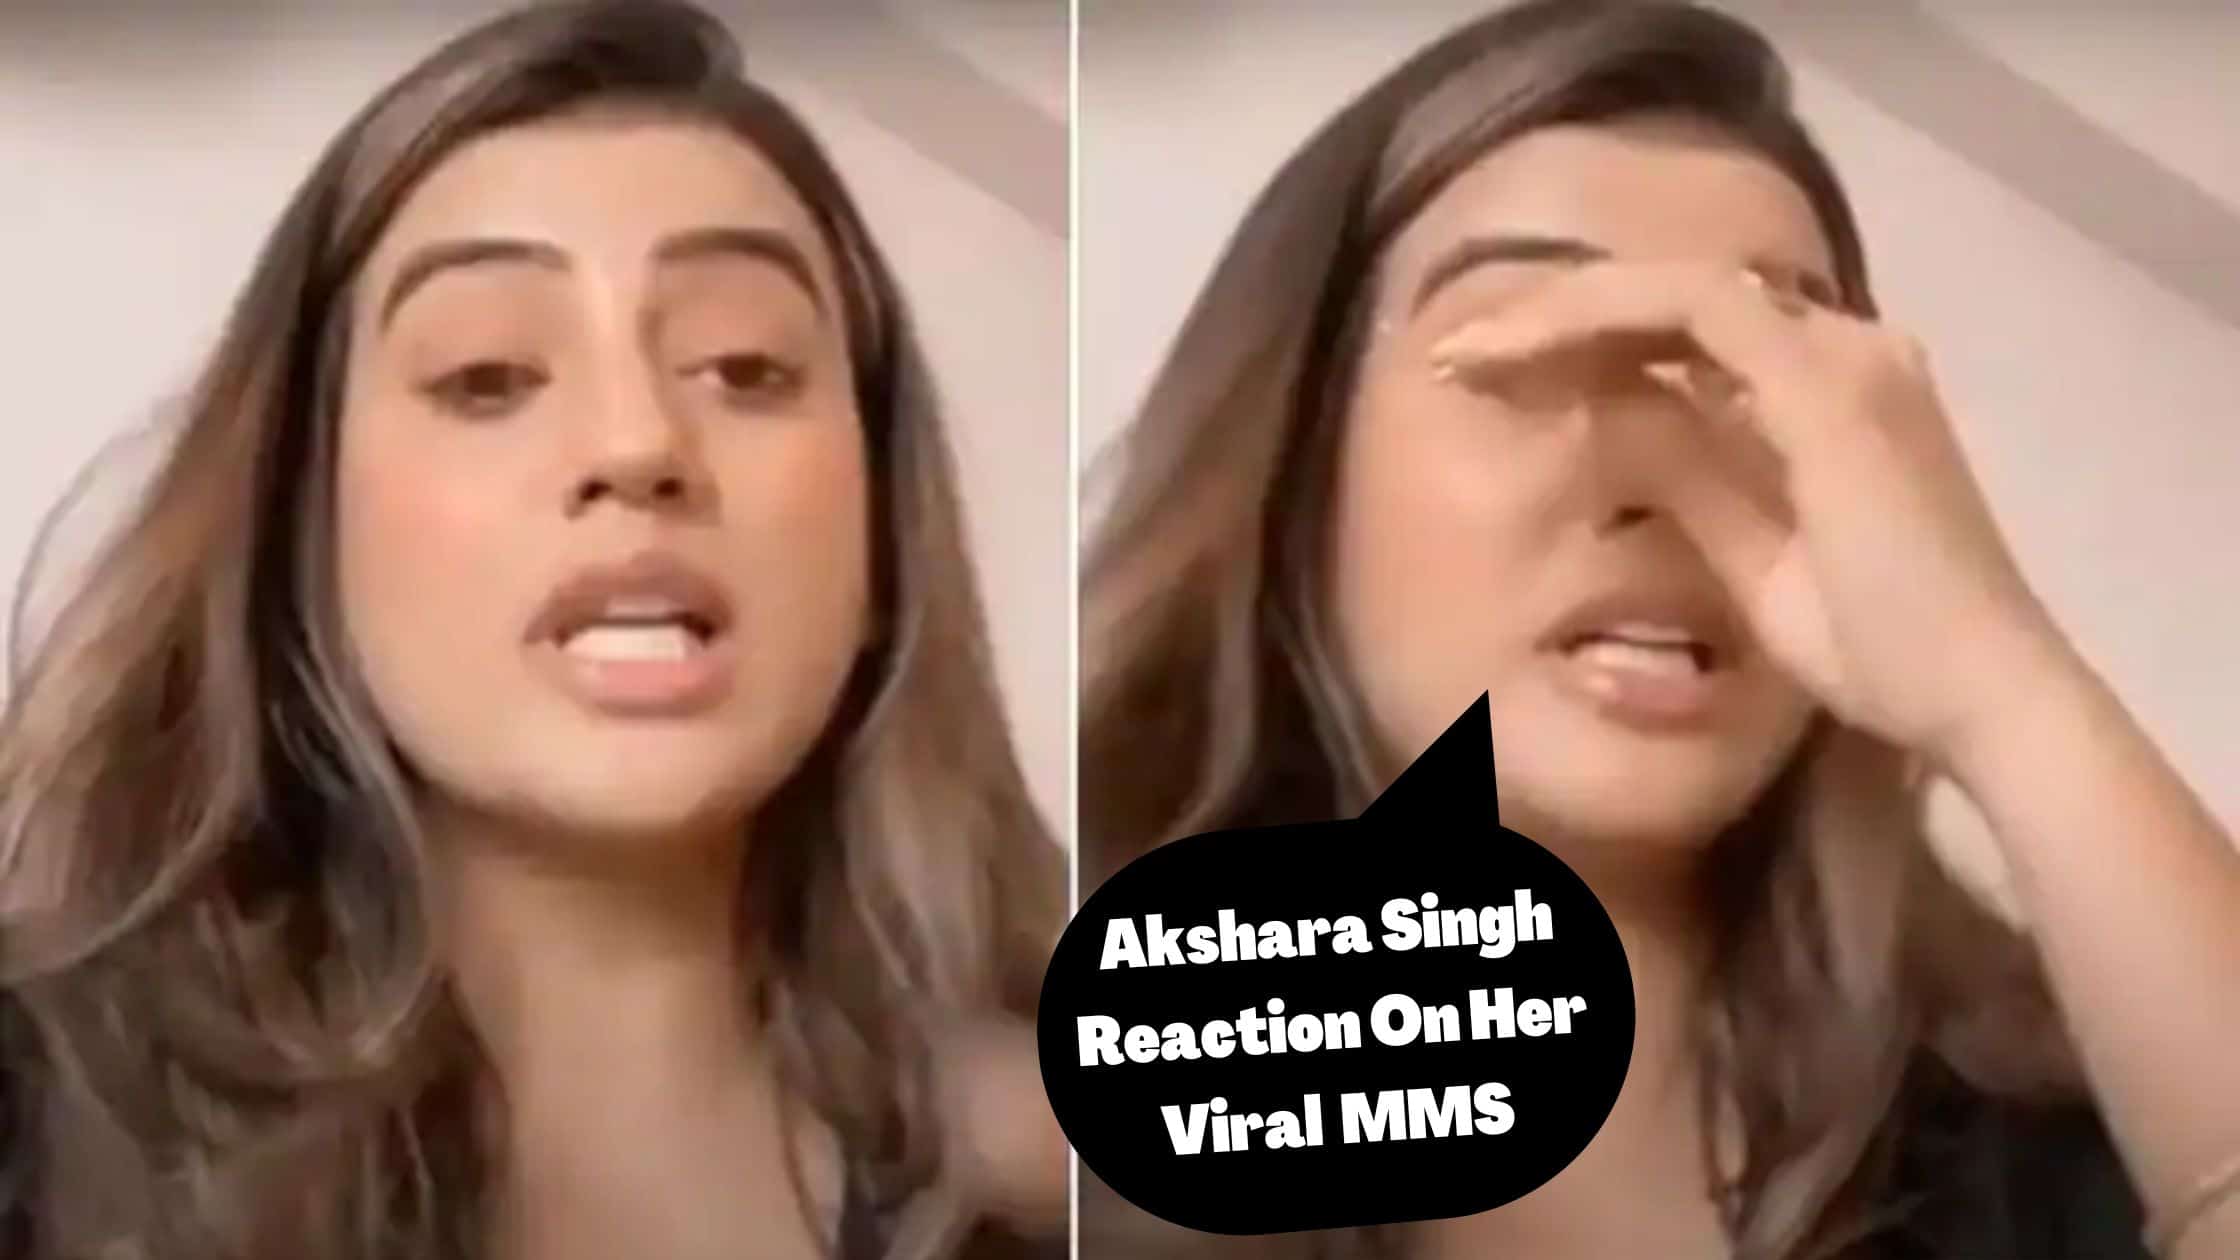 Akshara Singh mms video reaction 